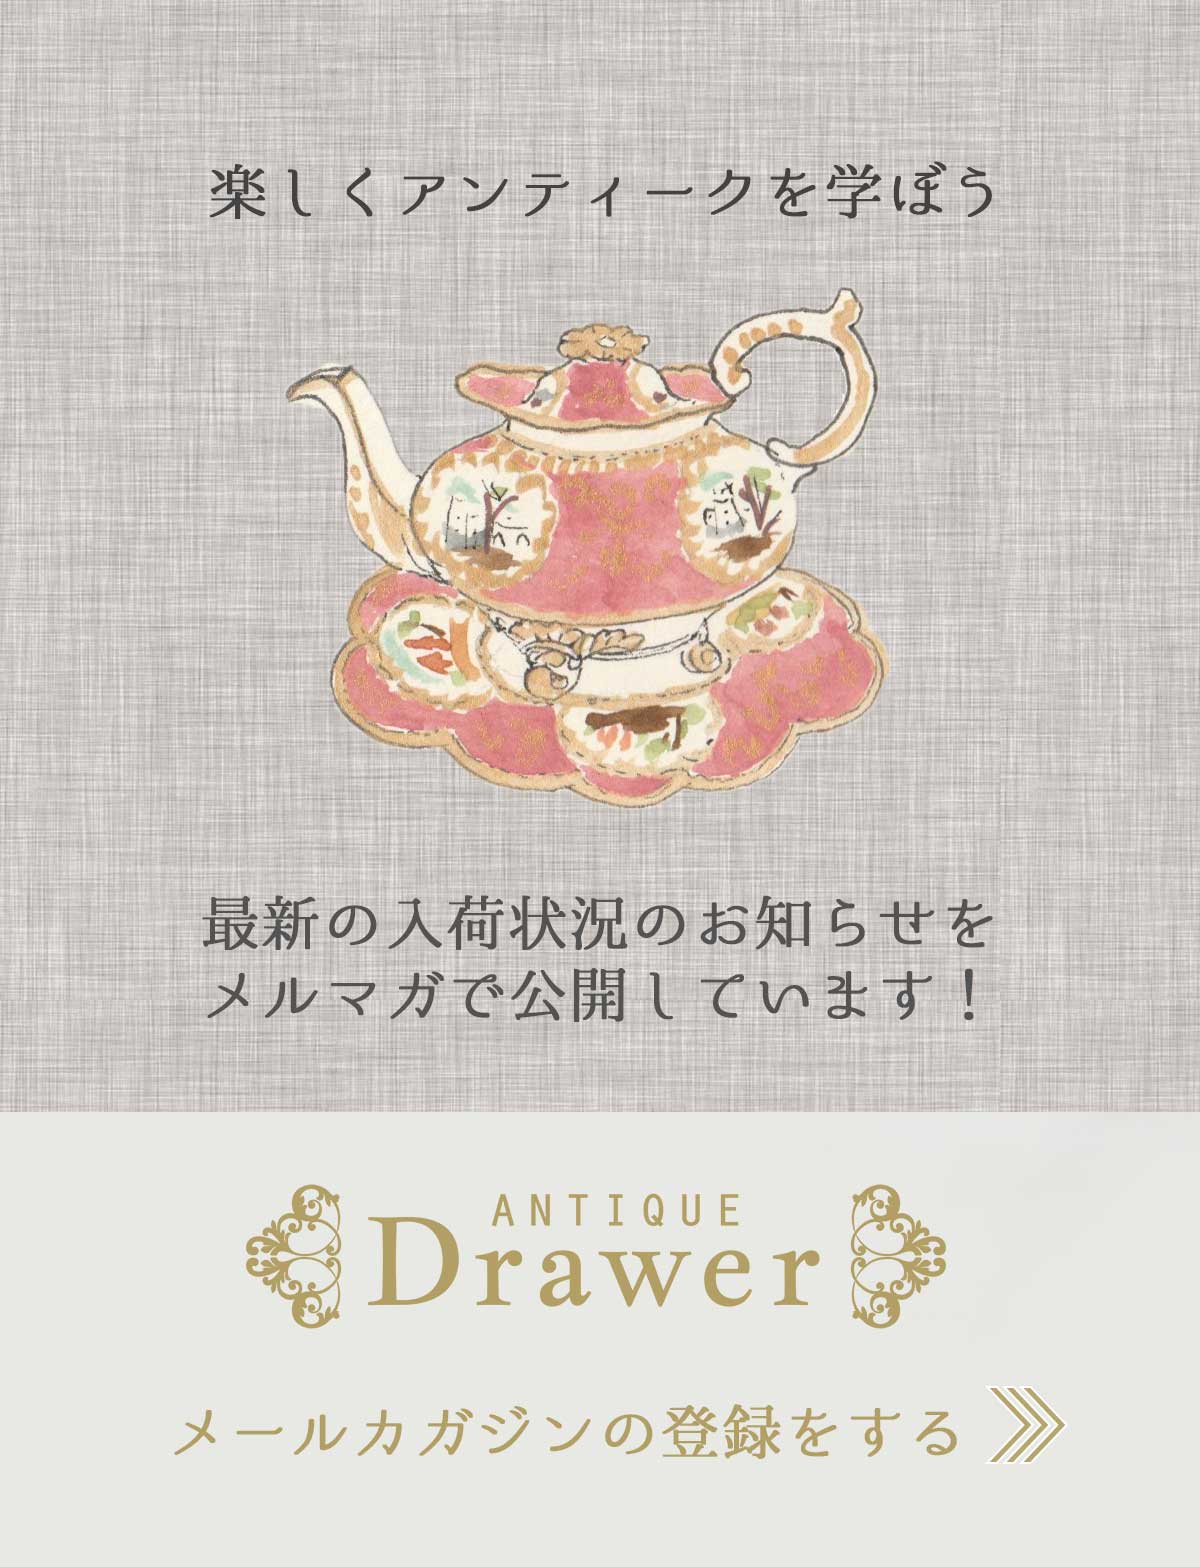 “Drawer